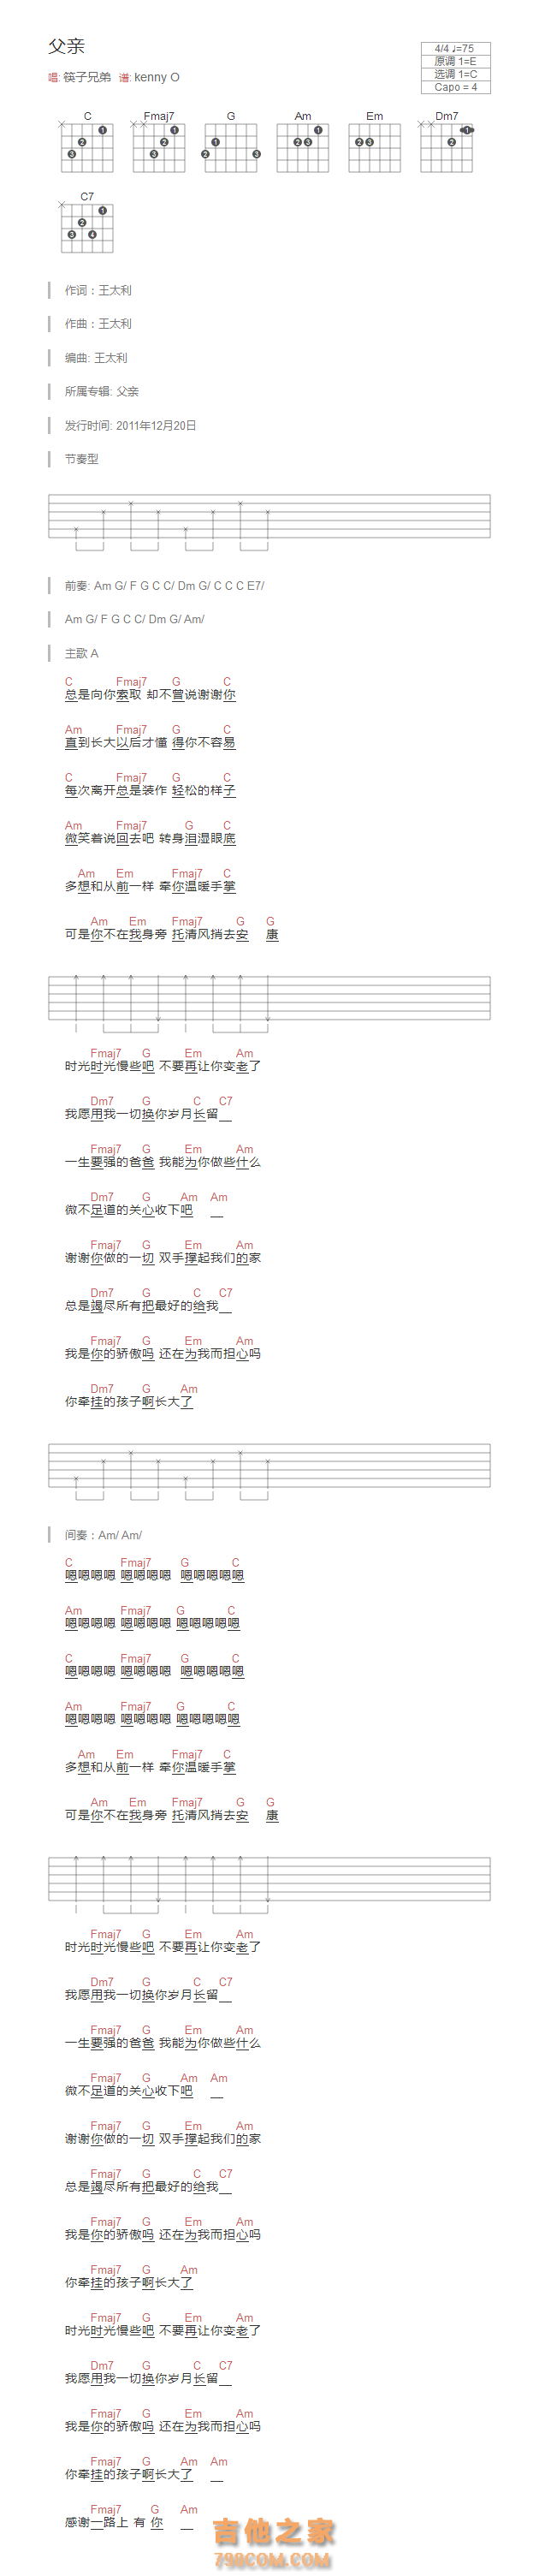 [父亲主题曲]父亲吉他谱和弦版 筷子兄弟